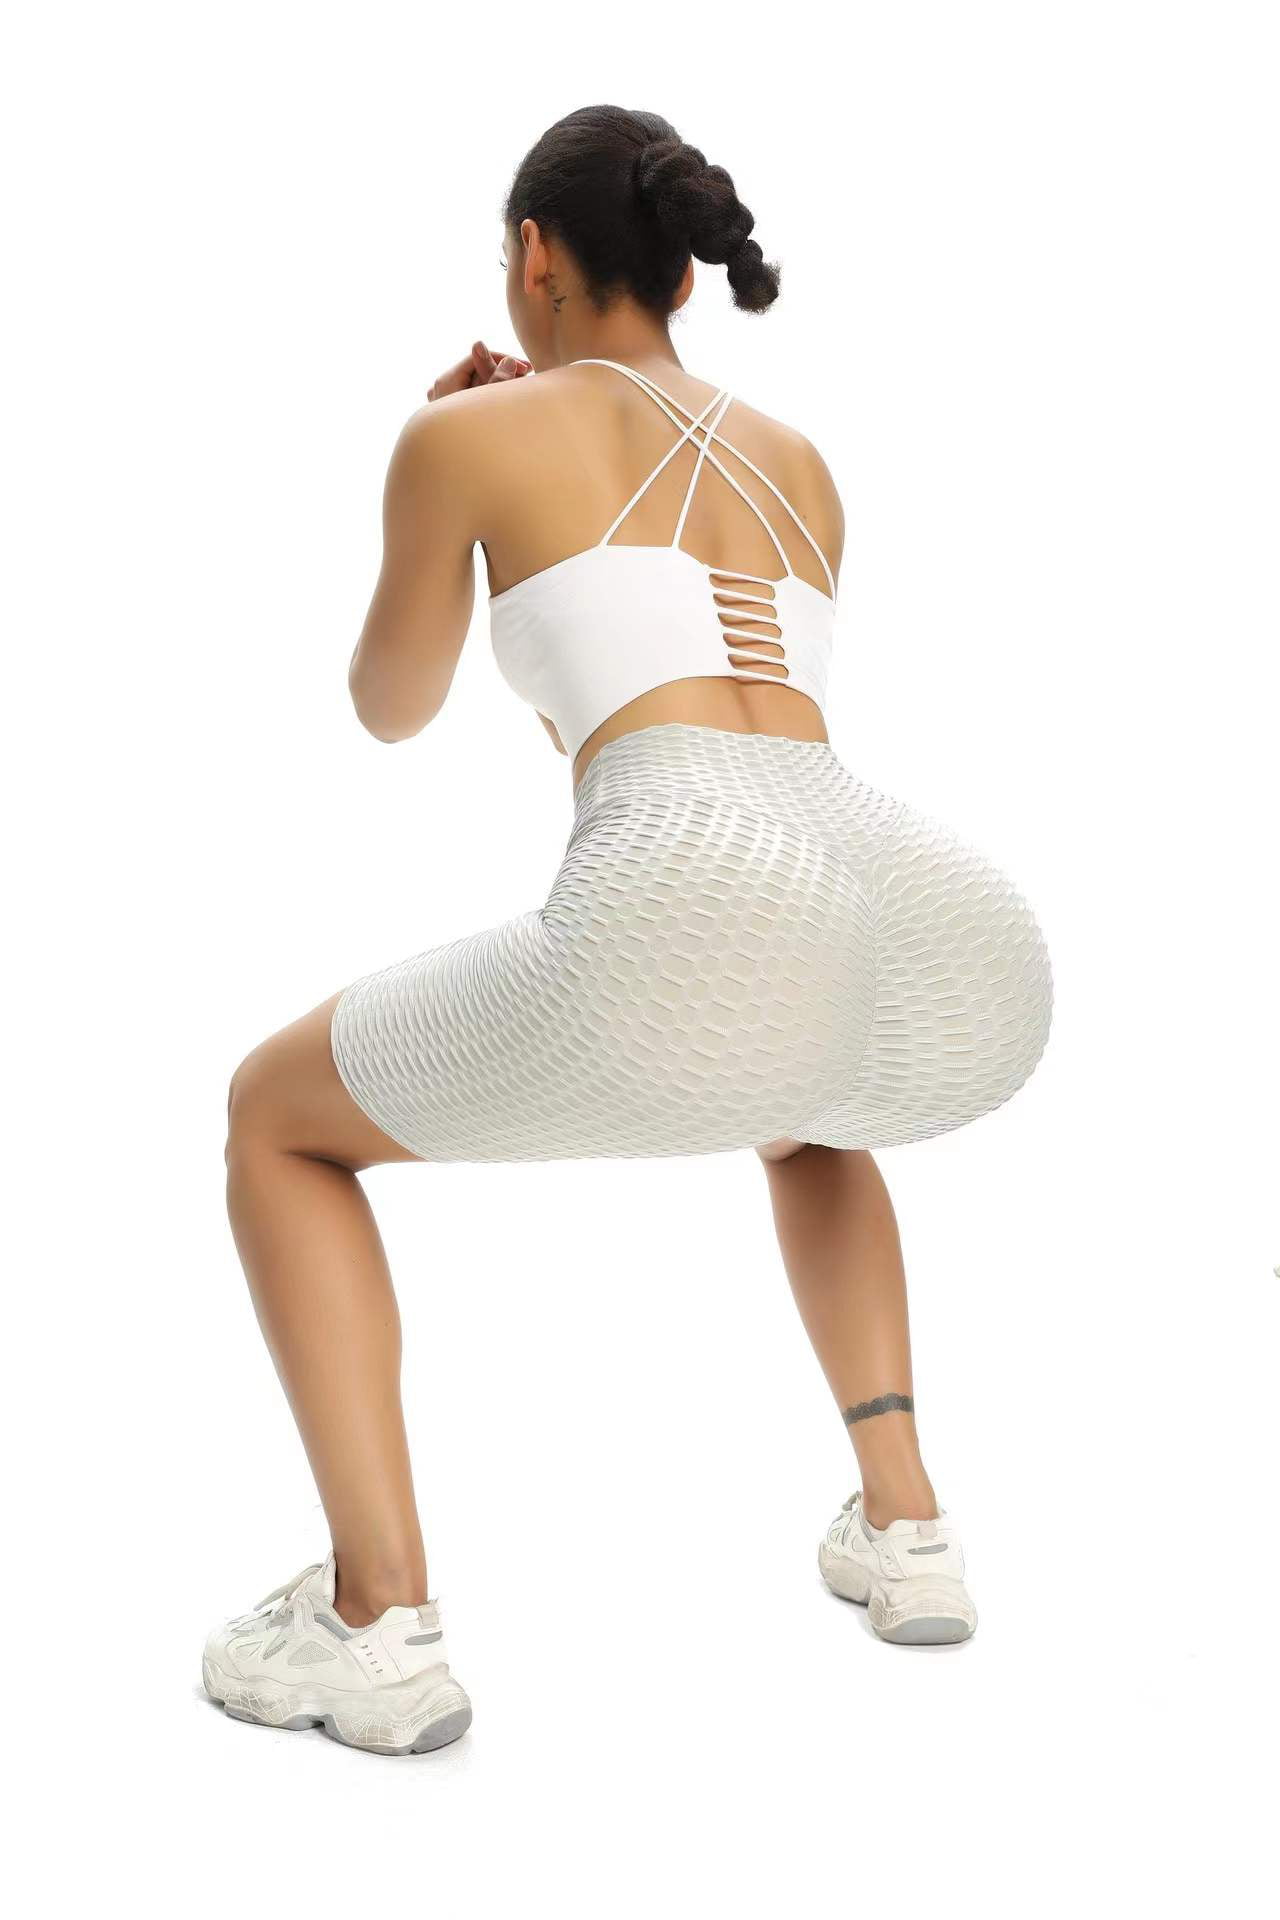 QOQ Women Butt Lift Workout Shorts Textured High Waist Scrunch Booty Yoga Shorts Honeycomb Tummy Control Biker Shorts